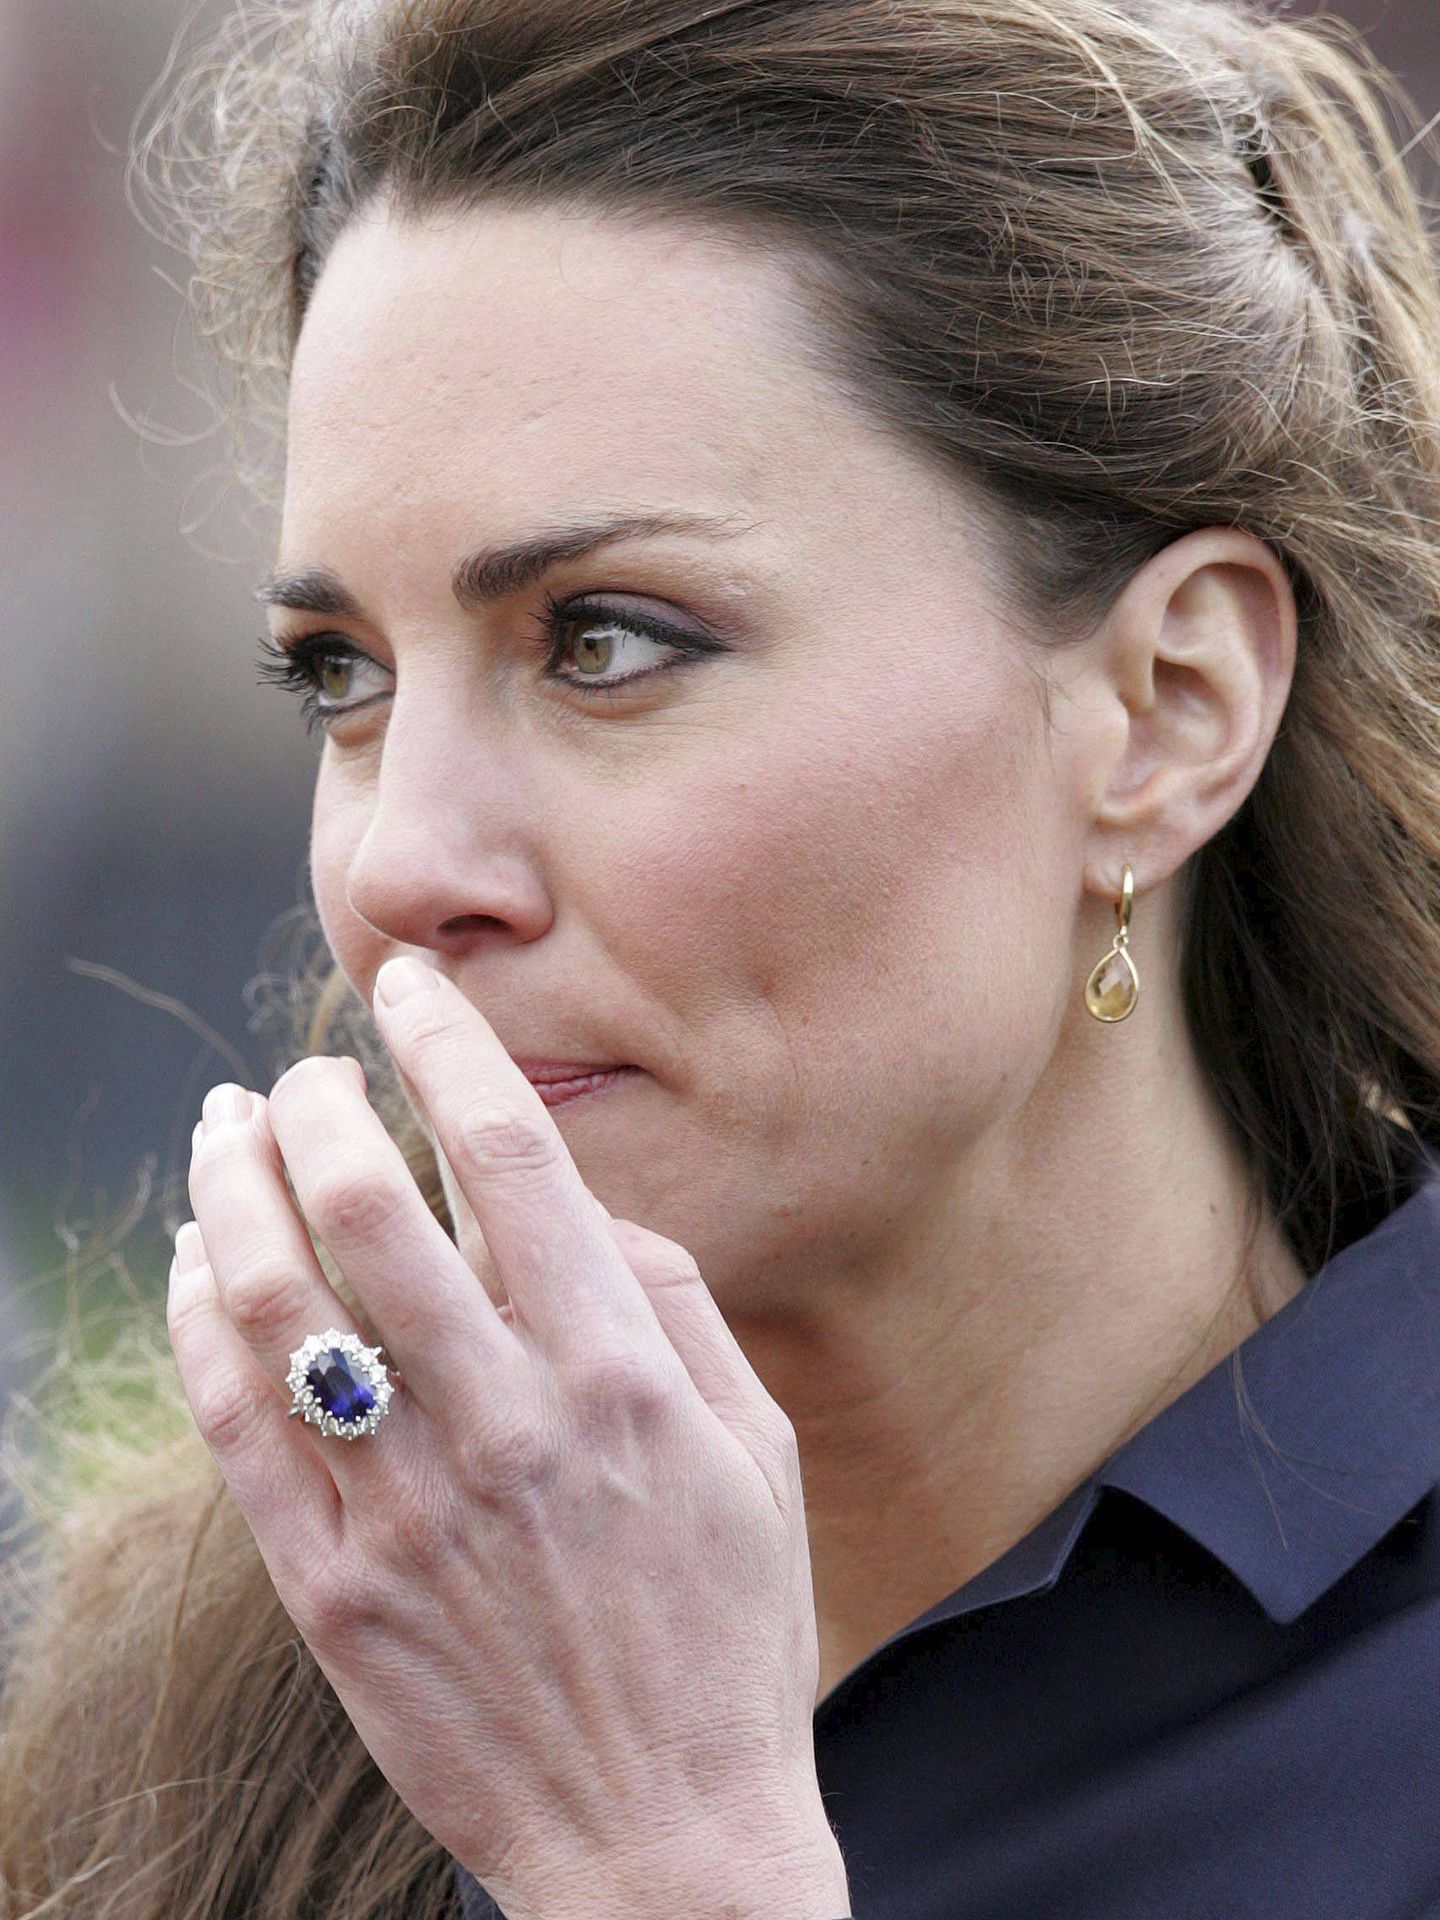 Foto de archivo de Kate Middleton luciendo su anillo de compromiso. (EFE)